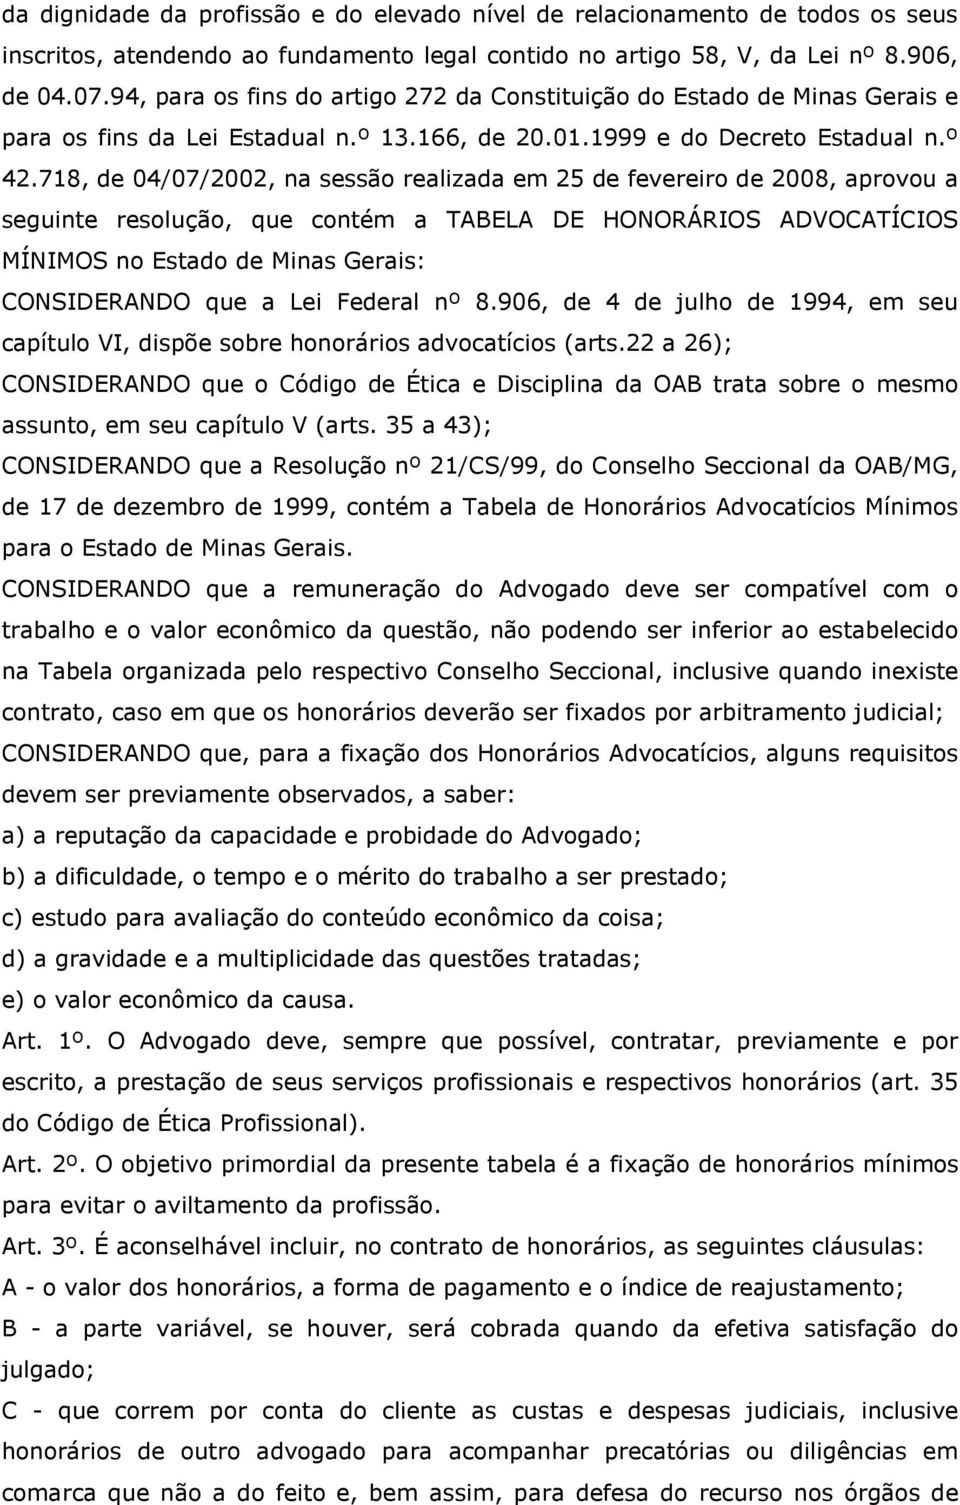 718, de 04/07/2002, na sessão realizada em 25 de fevereiro de 2008, aprovou a seguinte resolução, que contém a TABELA DE HONORÁRIOS ADVOCATÍCIOS MÍNIMOS no Estado de Minas Gerais: CONSIDERANDO que a